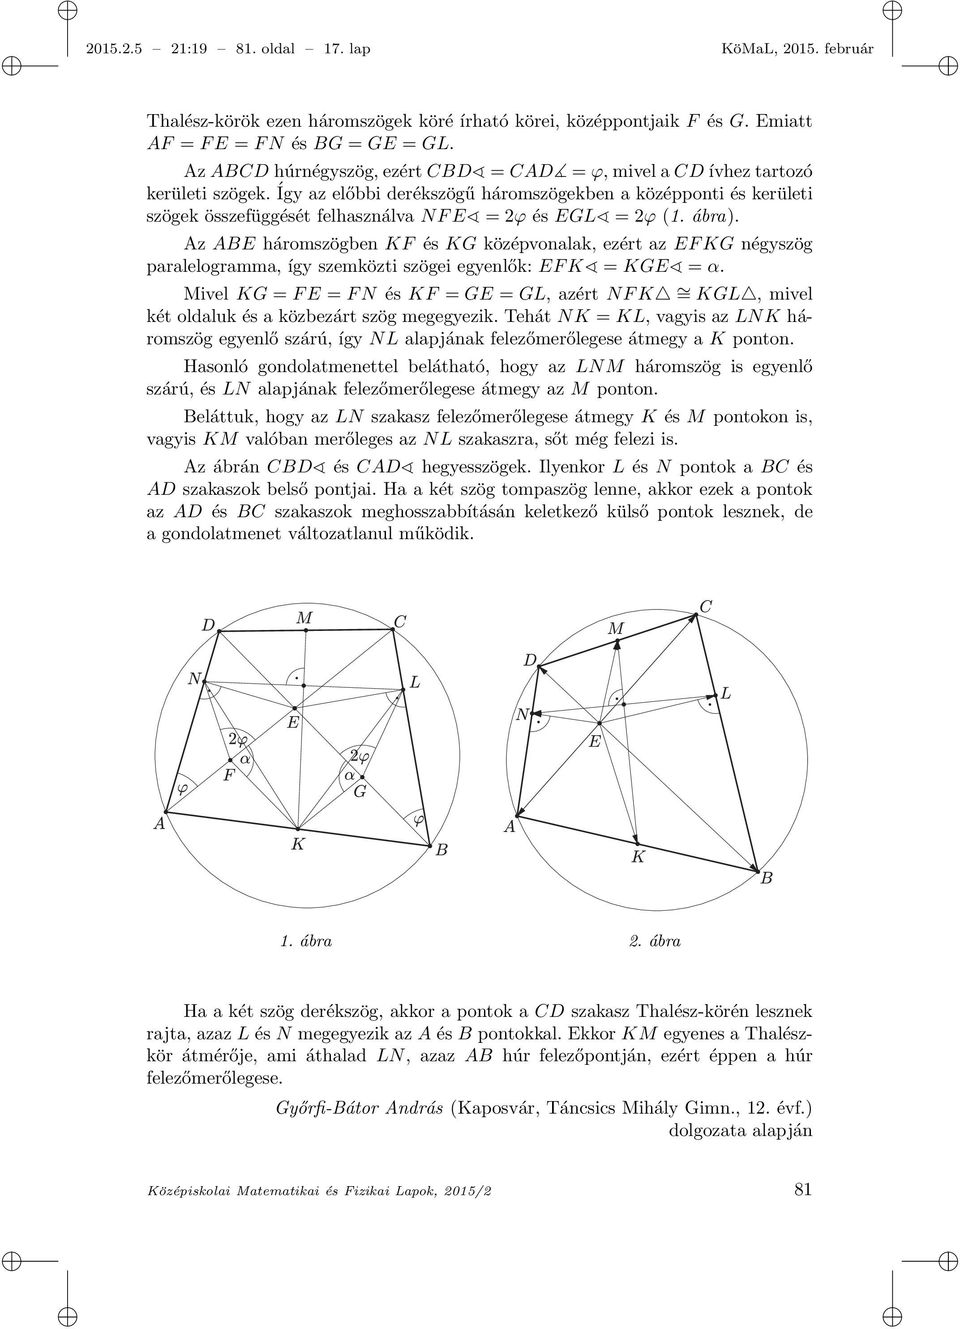 Így az előbbi derékszögű háromszögekben a középponti és kerületi szögek összefüggését felhasználva NF E = 2φ és EGL = 2φ (1. ábra).